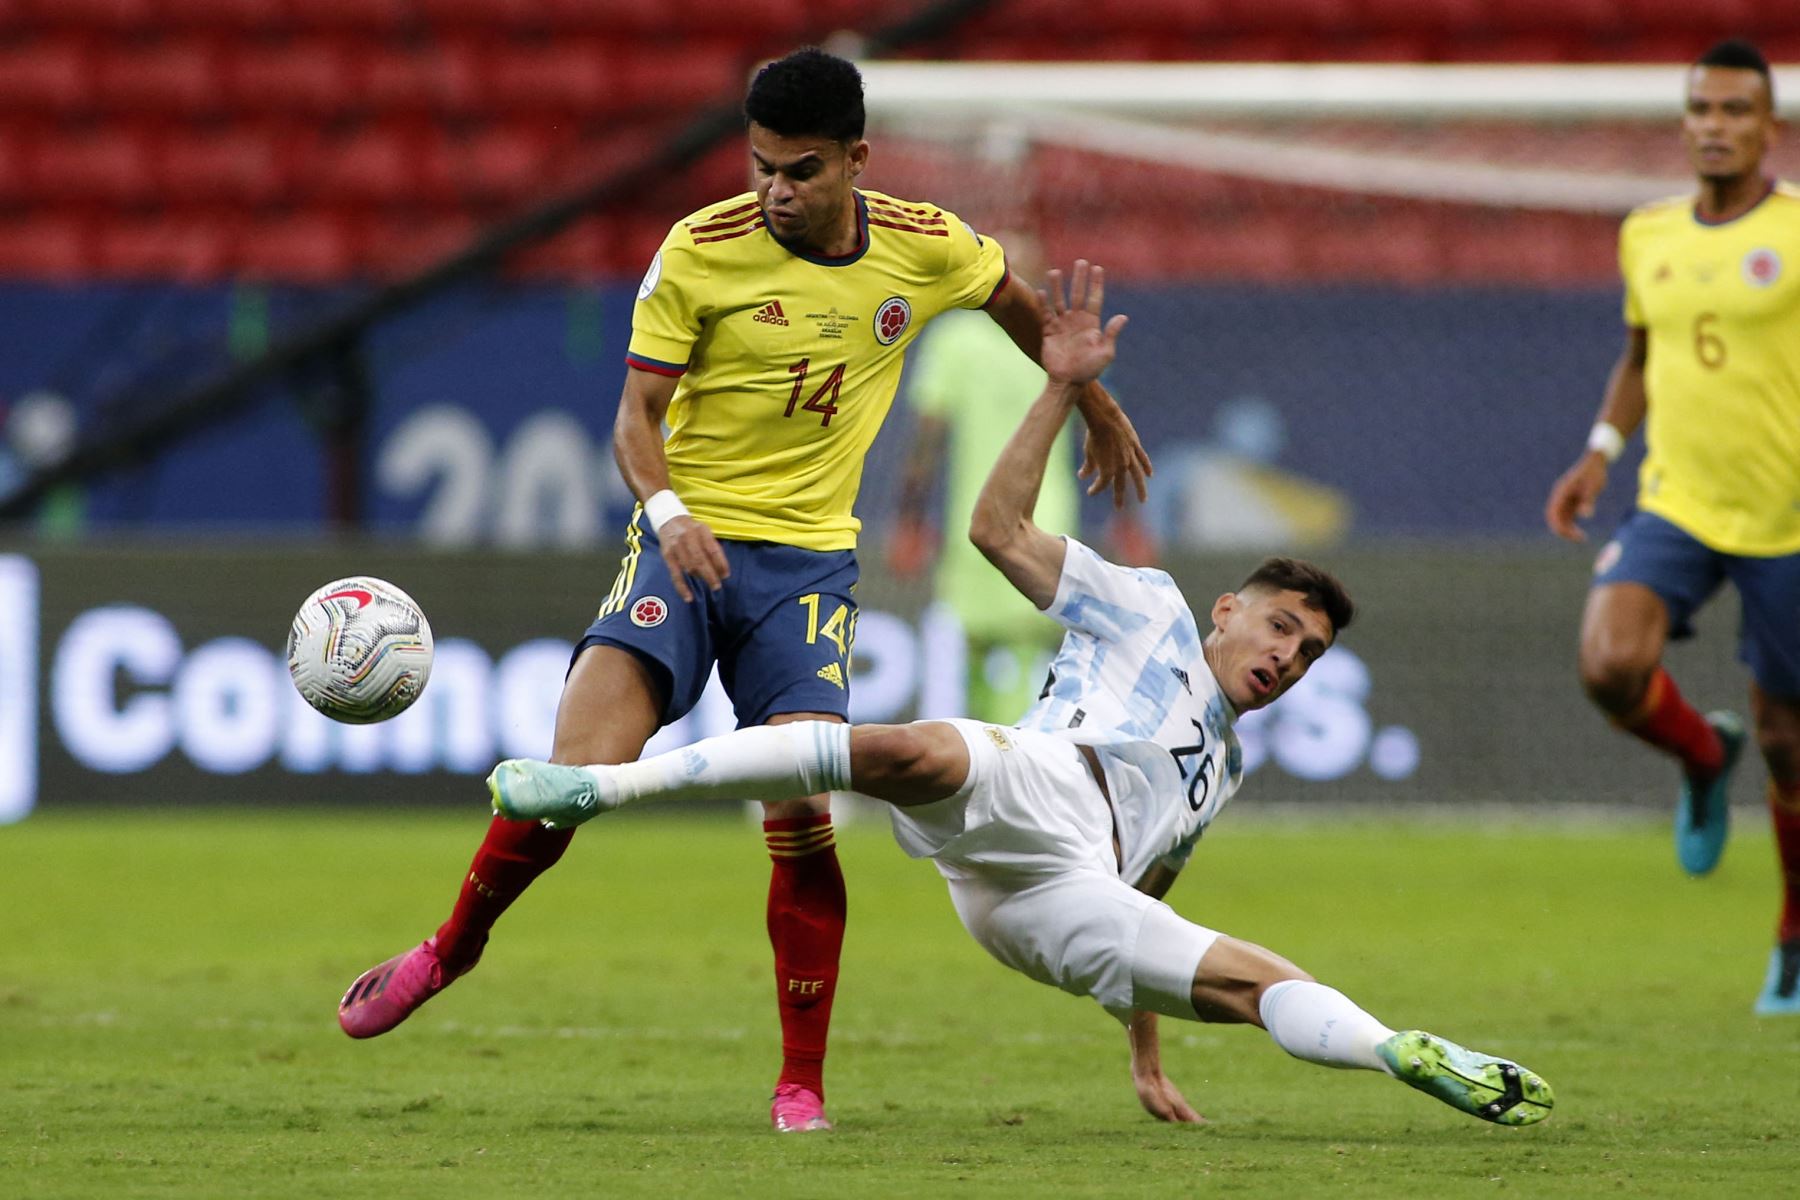 El colombiano Luis Díaz y el argentino Nahuel Molina compiten por el balón durante la semifinal del torneo de fútbol de la Copa América Conmebol 2021 en el estadio Mane Garrincha de Brasilia, Brasil.
Foto: AFP